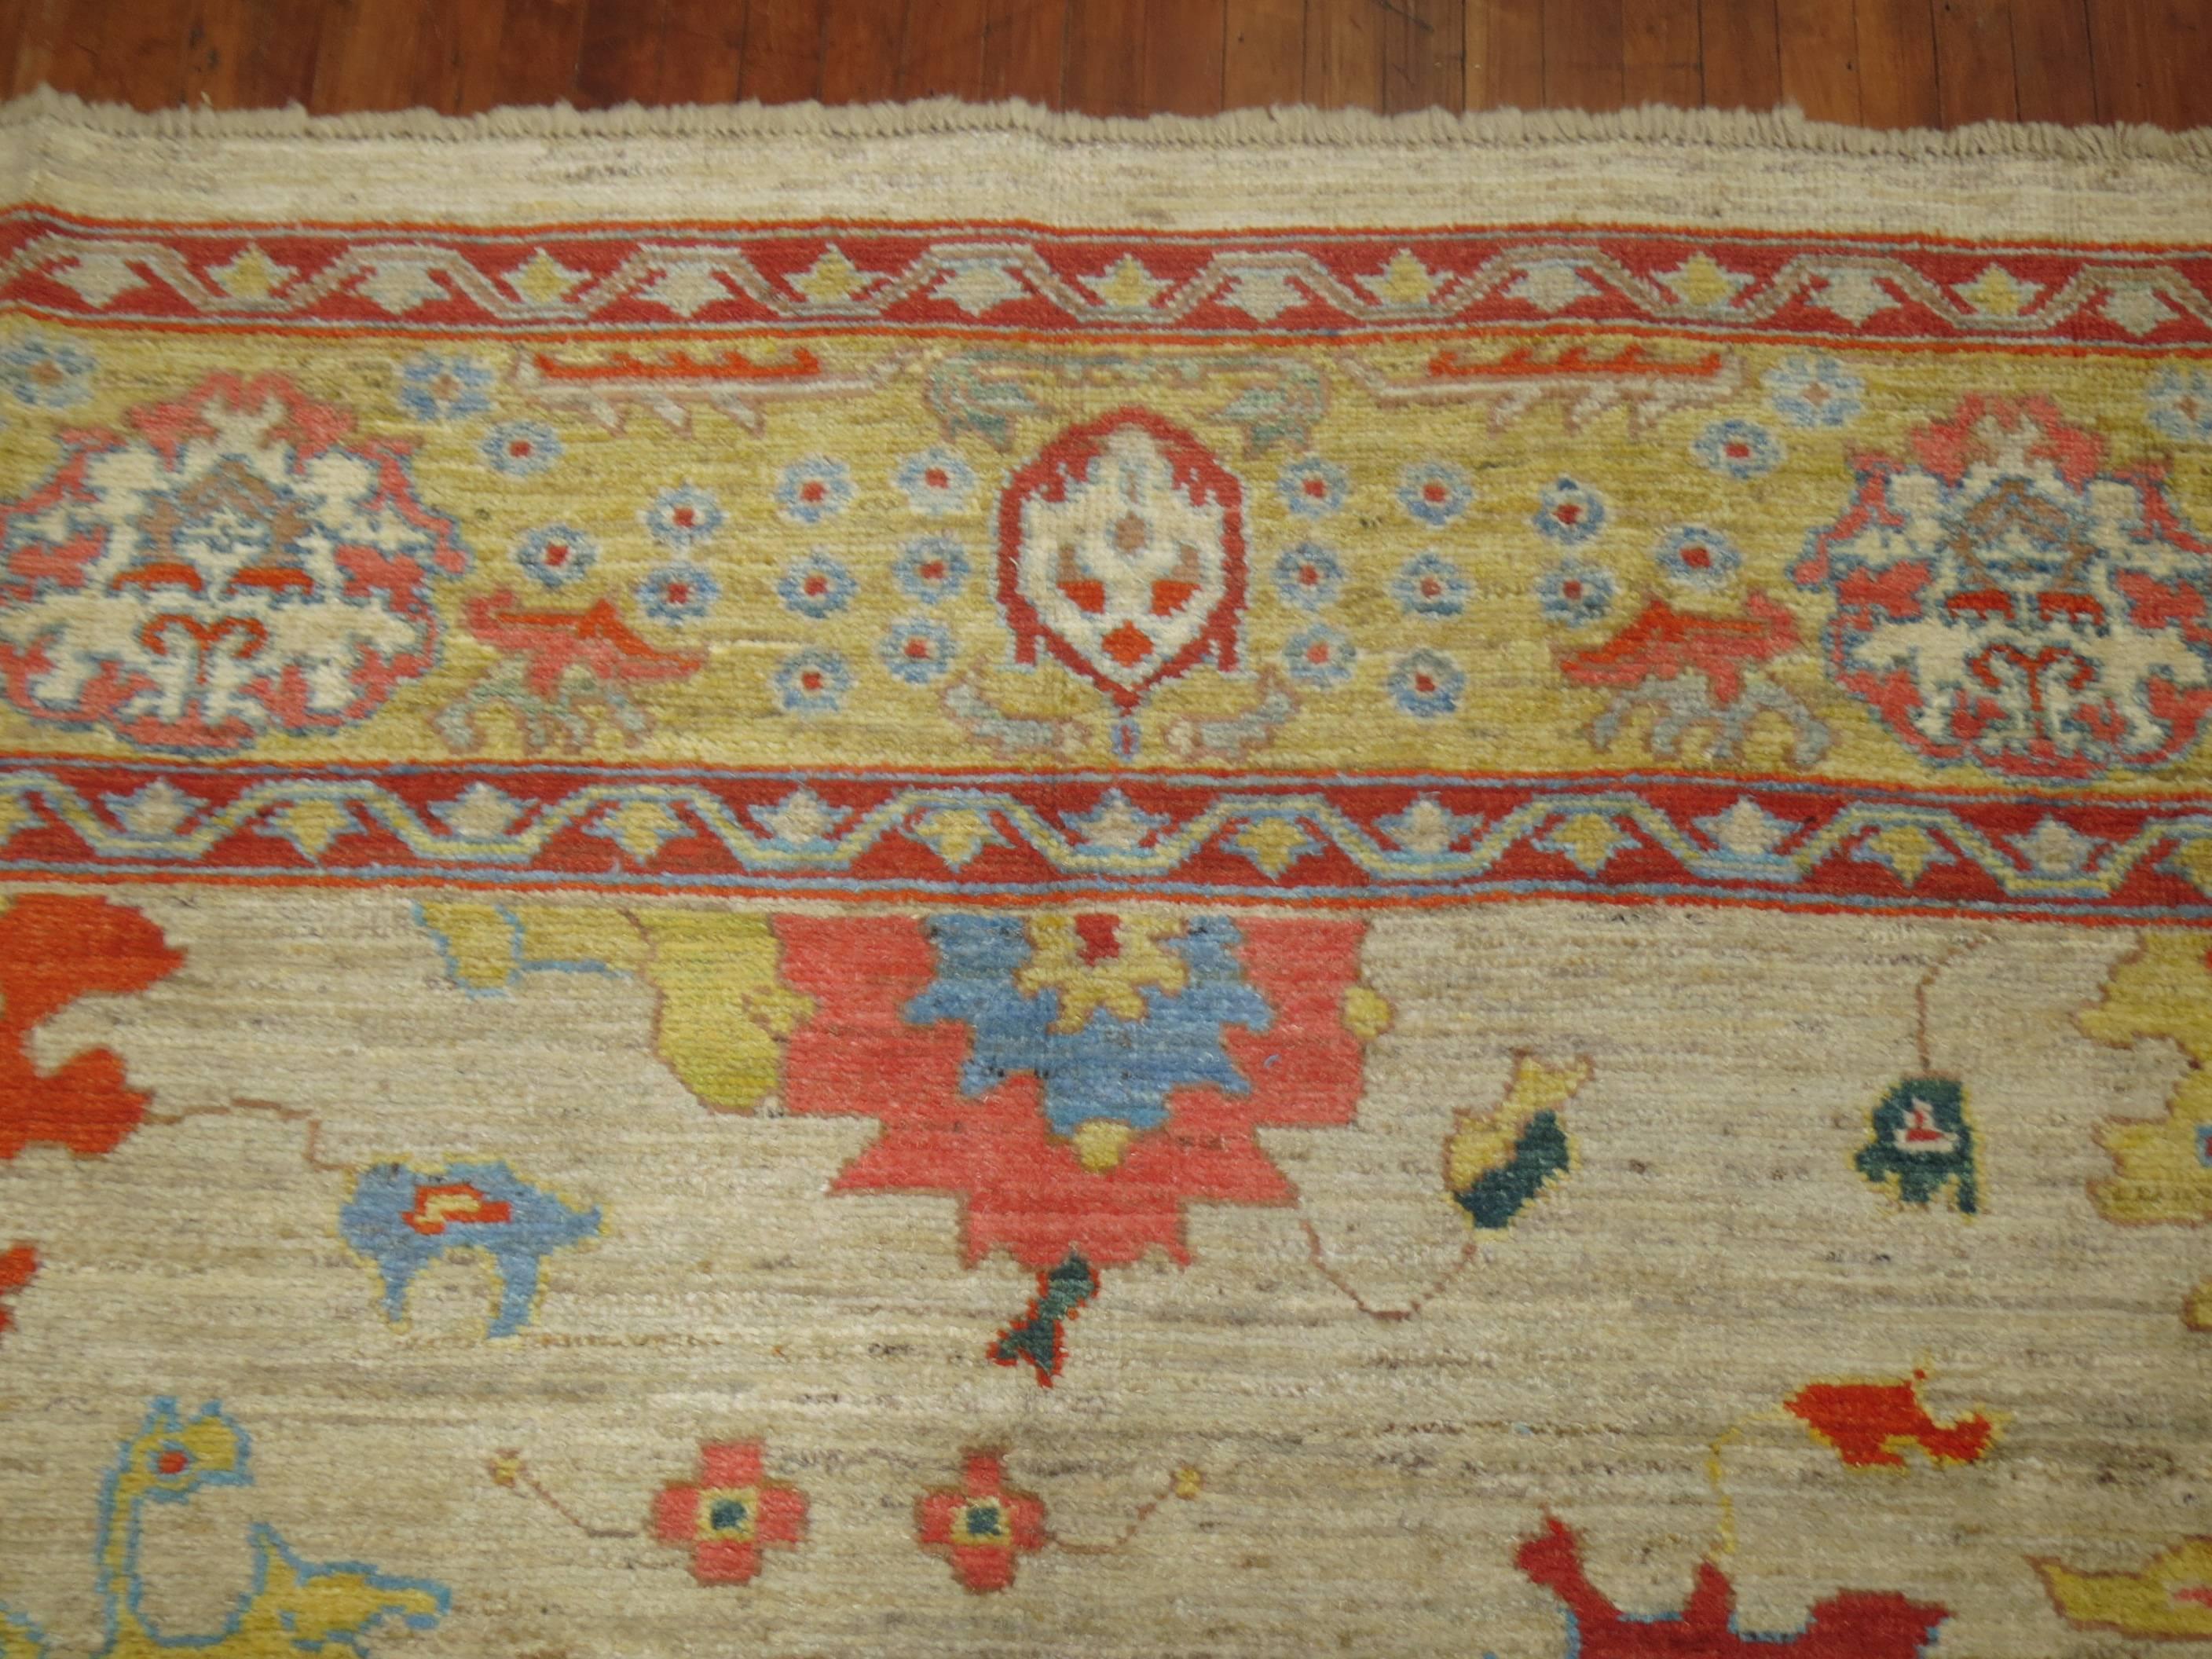 Hand-Woven Vintage Inspired Oushak Carpet For Sale